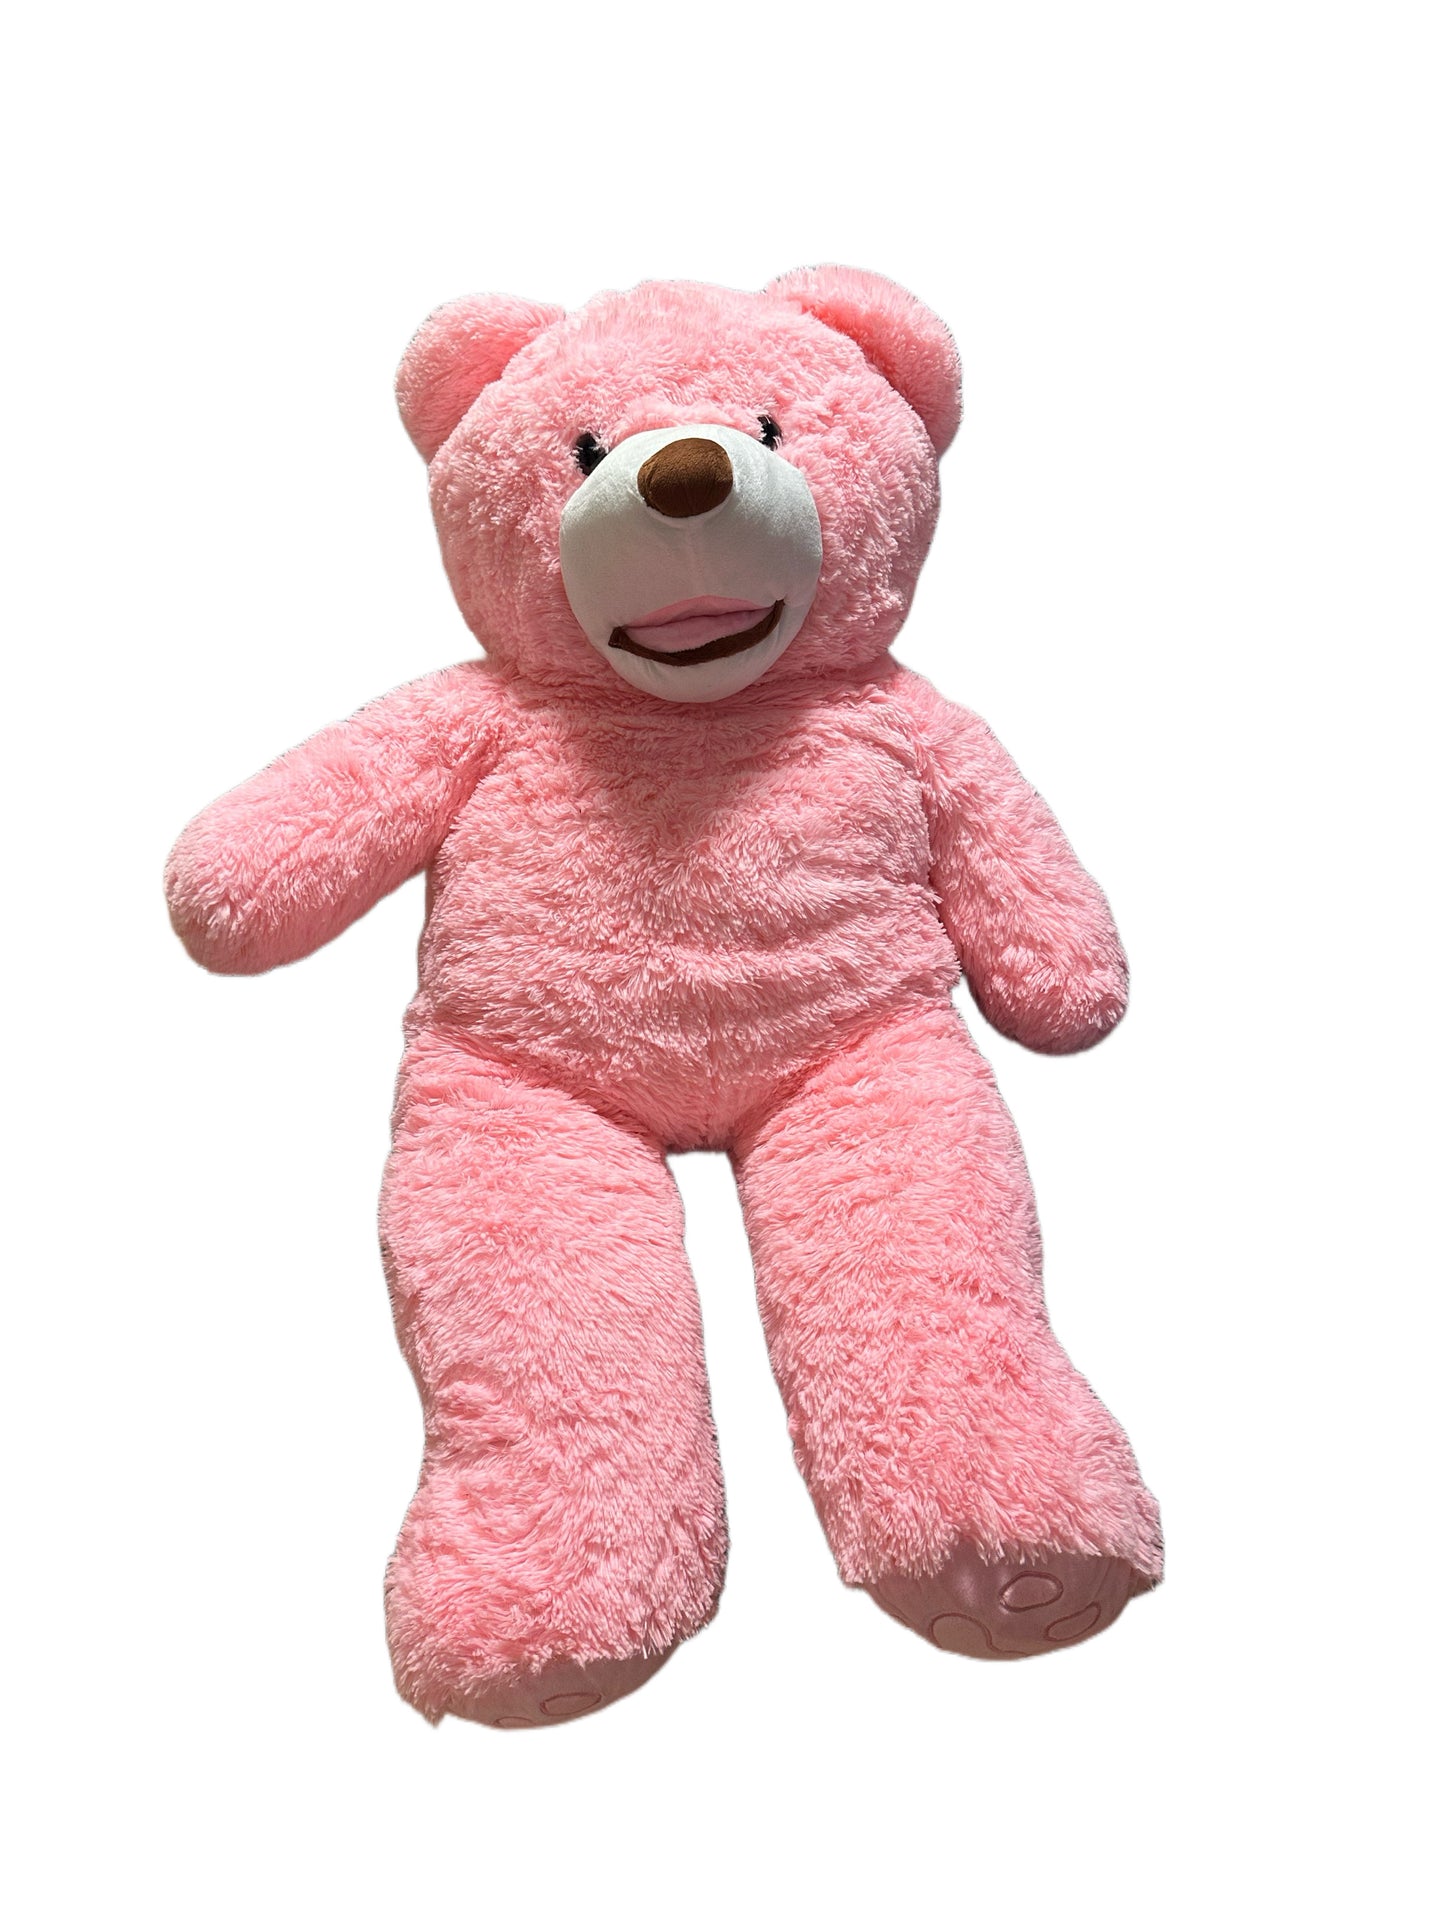 1 Metre Giant Plush Pink Teddy Bear